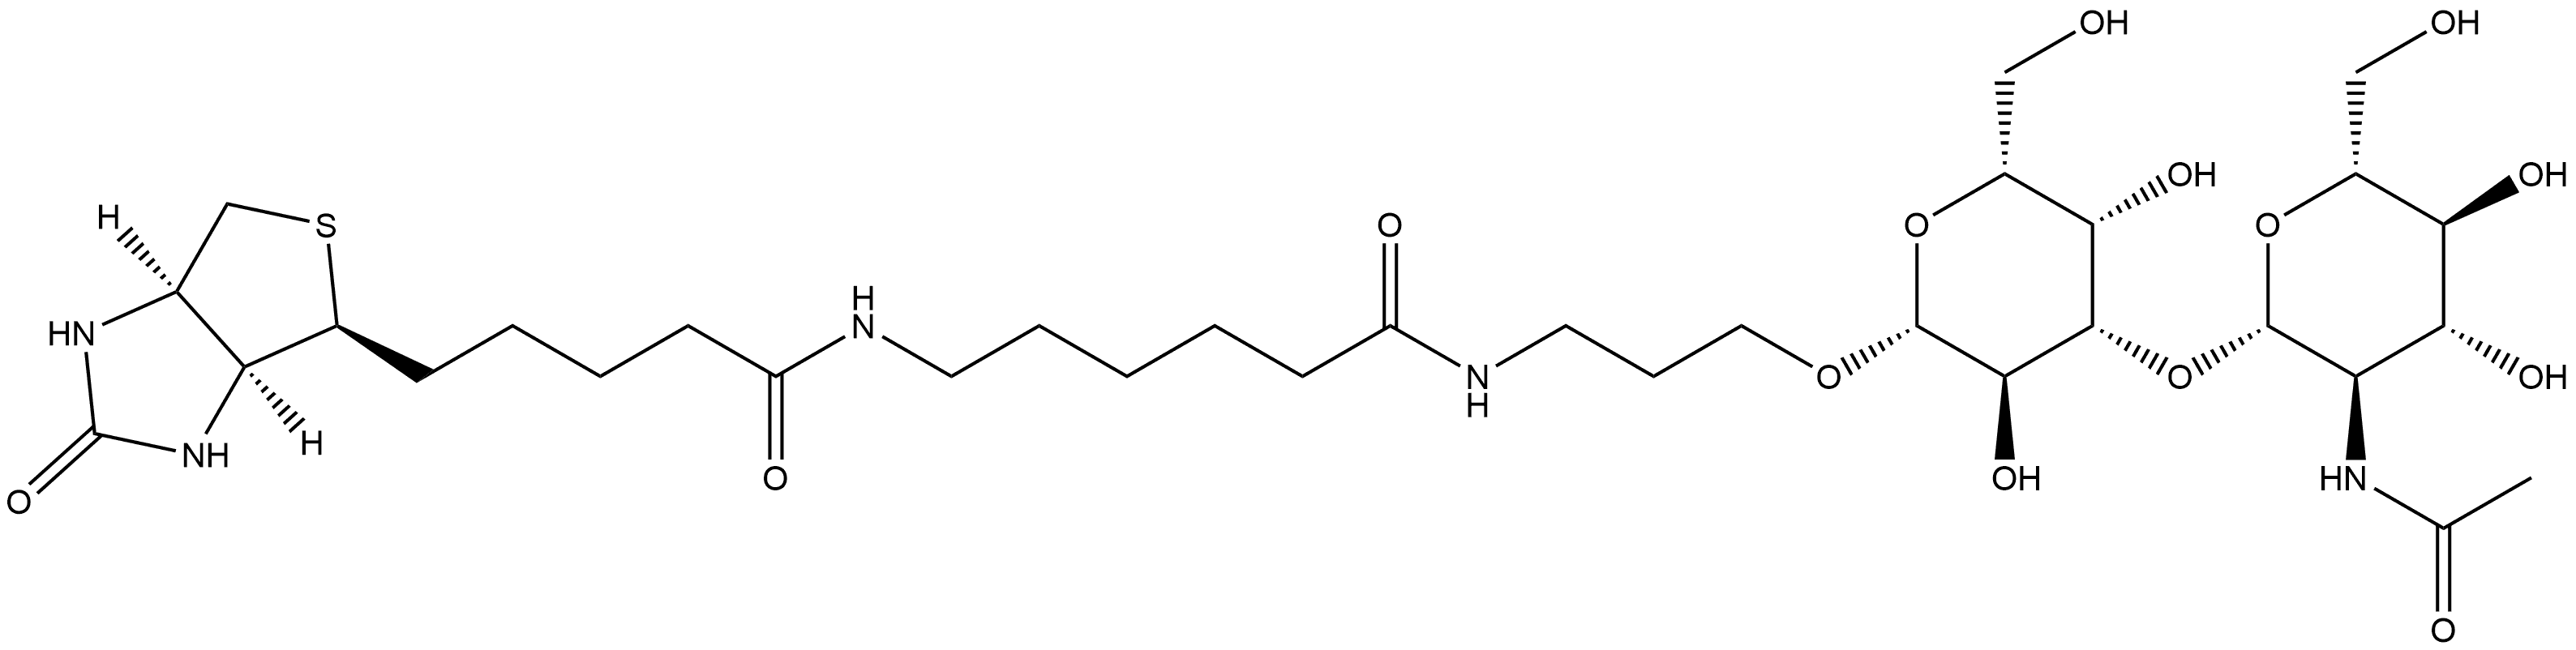 1038746-31-4 (3aS,4S,6aR)-N-[6-[[3-[[3-O-[2-(Acetylamino)-2-deoxy-β-D-glucopyranosyl]-β-D-galactopyranosyl]oxy]propyl]amino]-6-oxohexyl]hexahydro-2-oxo-1H-thieno[3,4-d]imidazole-4-pentanamide